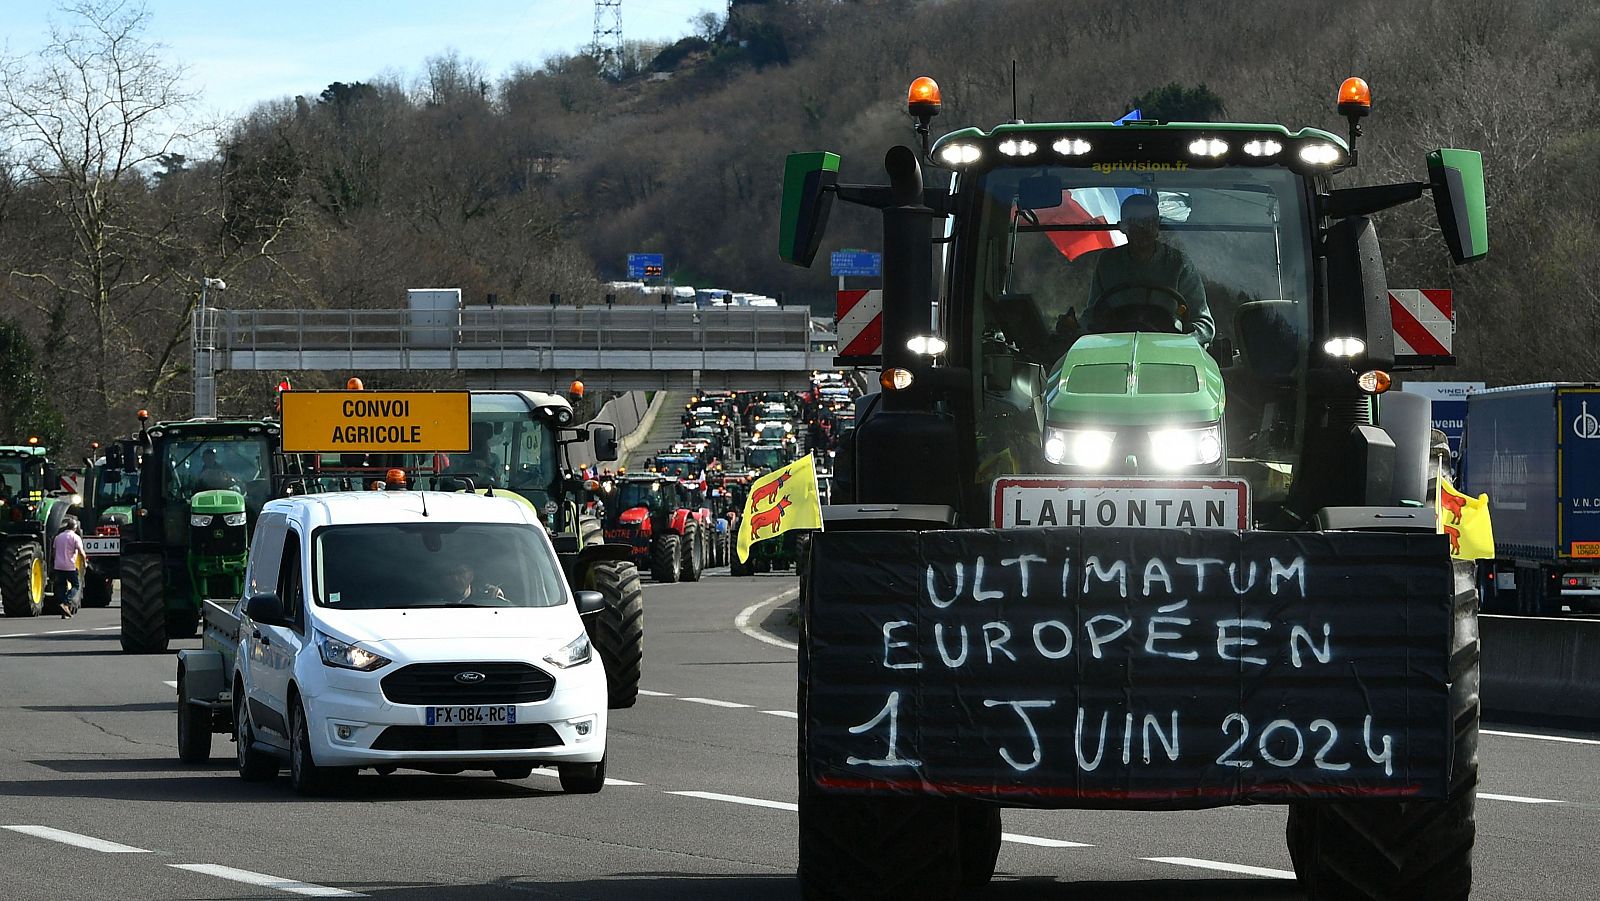 Un tractor porta una pancarta en la que se lee "Ultimátum europeo" en un convoy de agricultores franceses y españoles en la frontera, cerca de Irún